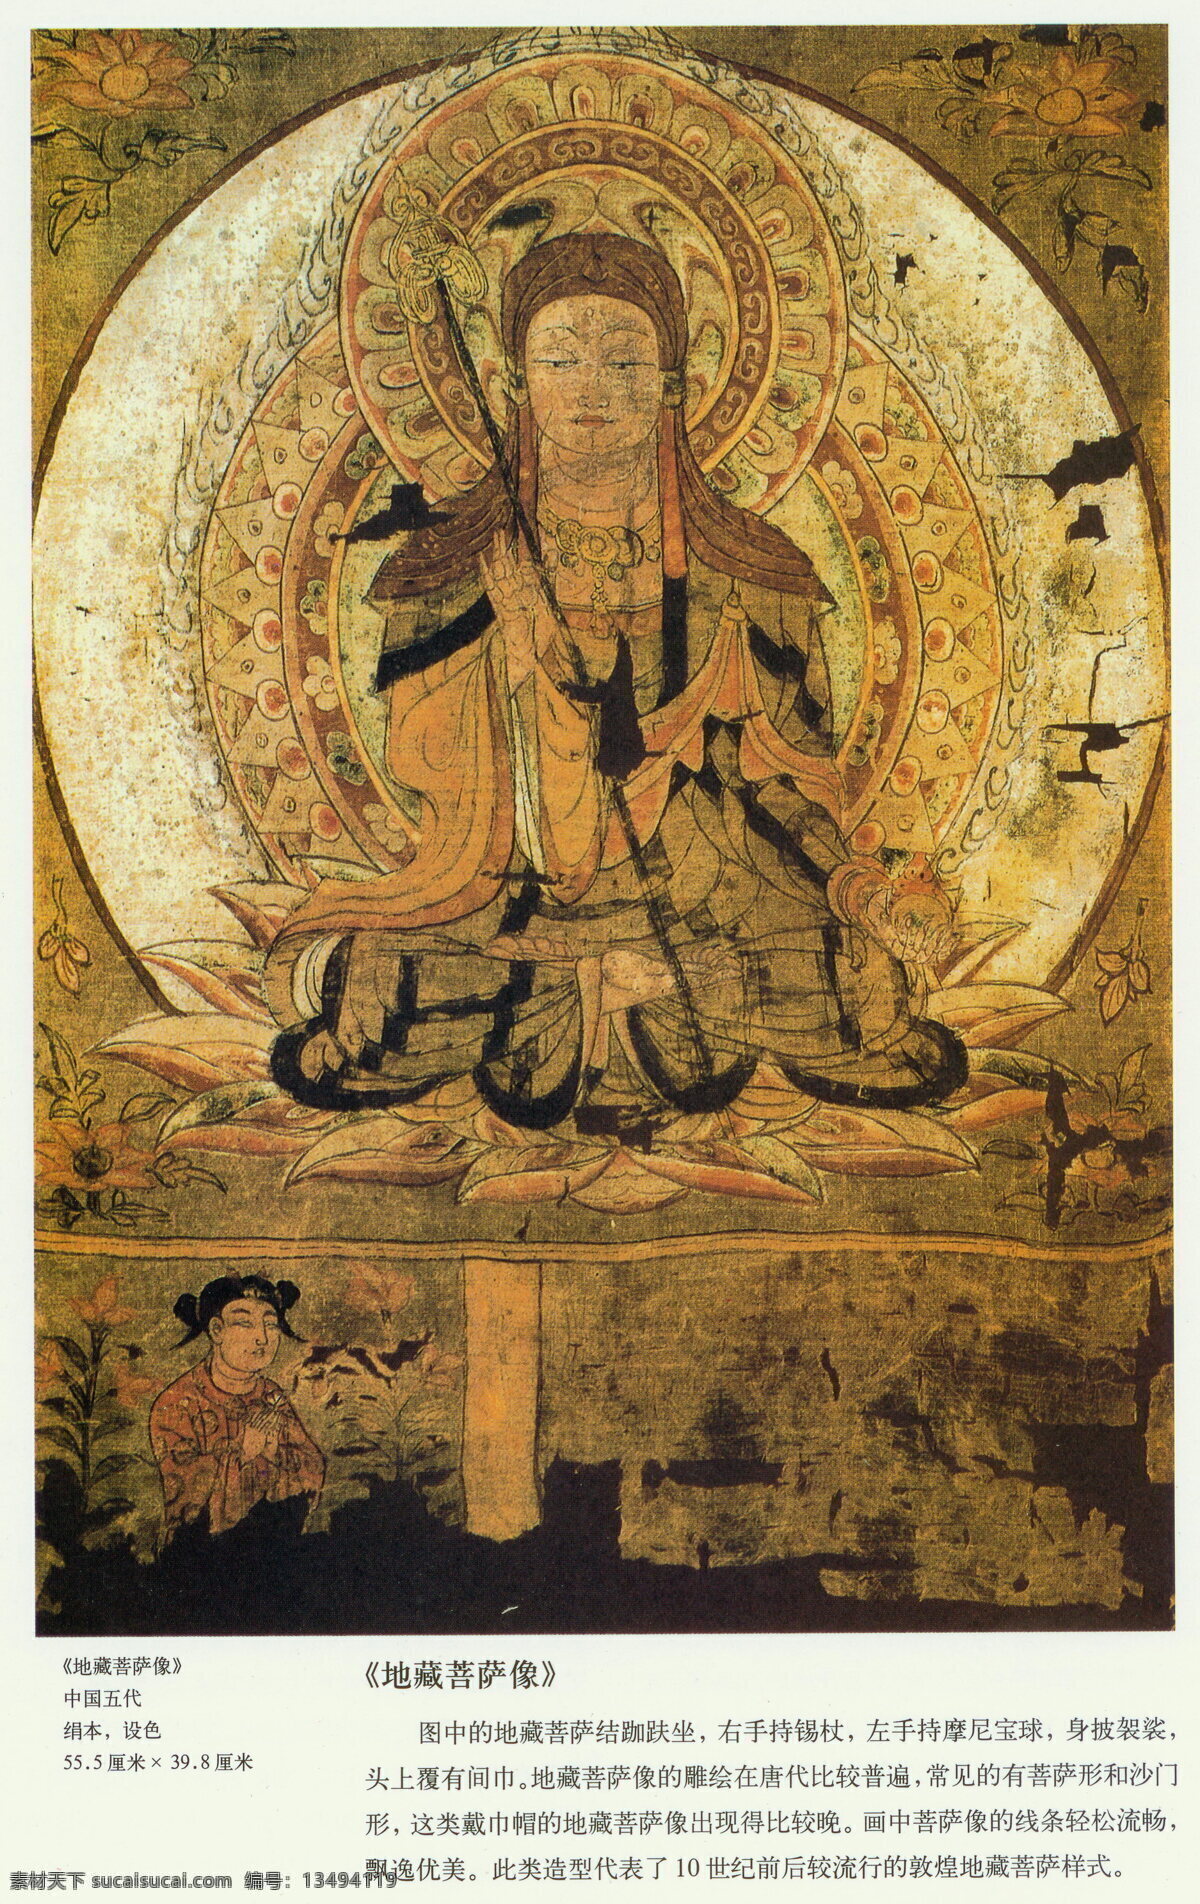 地藏菩萨 菩萨 佛教 信仰 宗教信仰 文化艺术